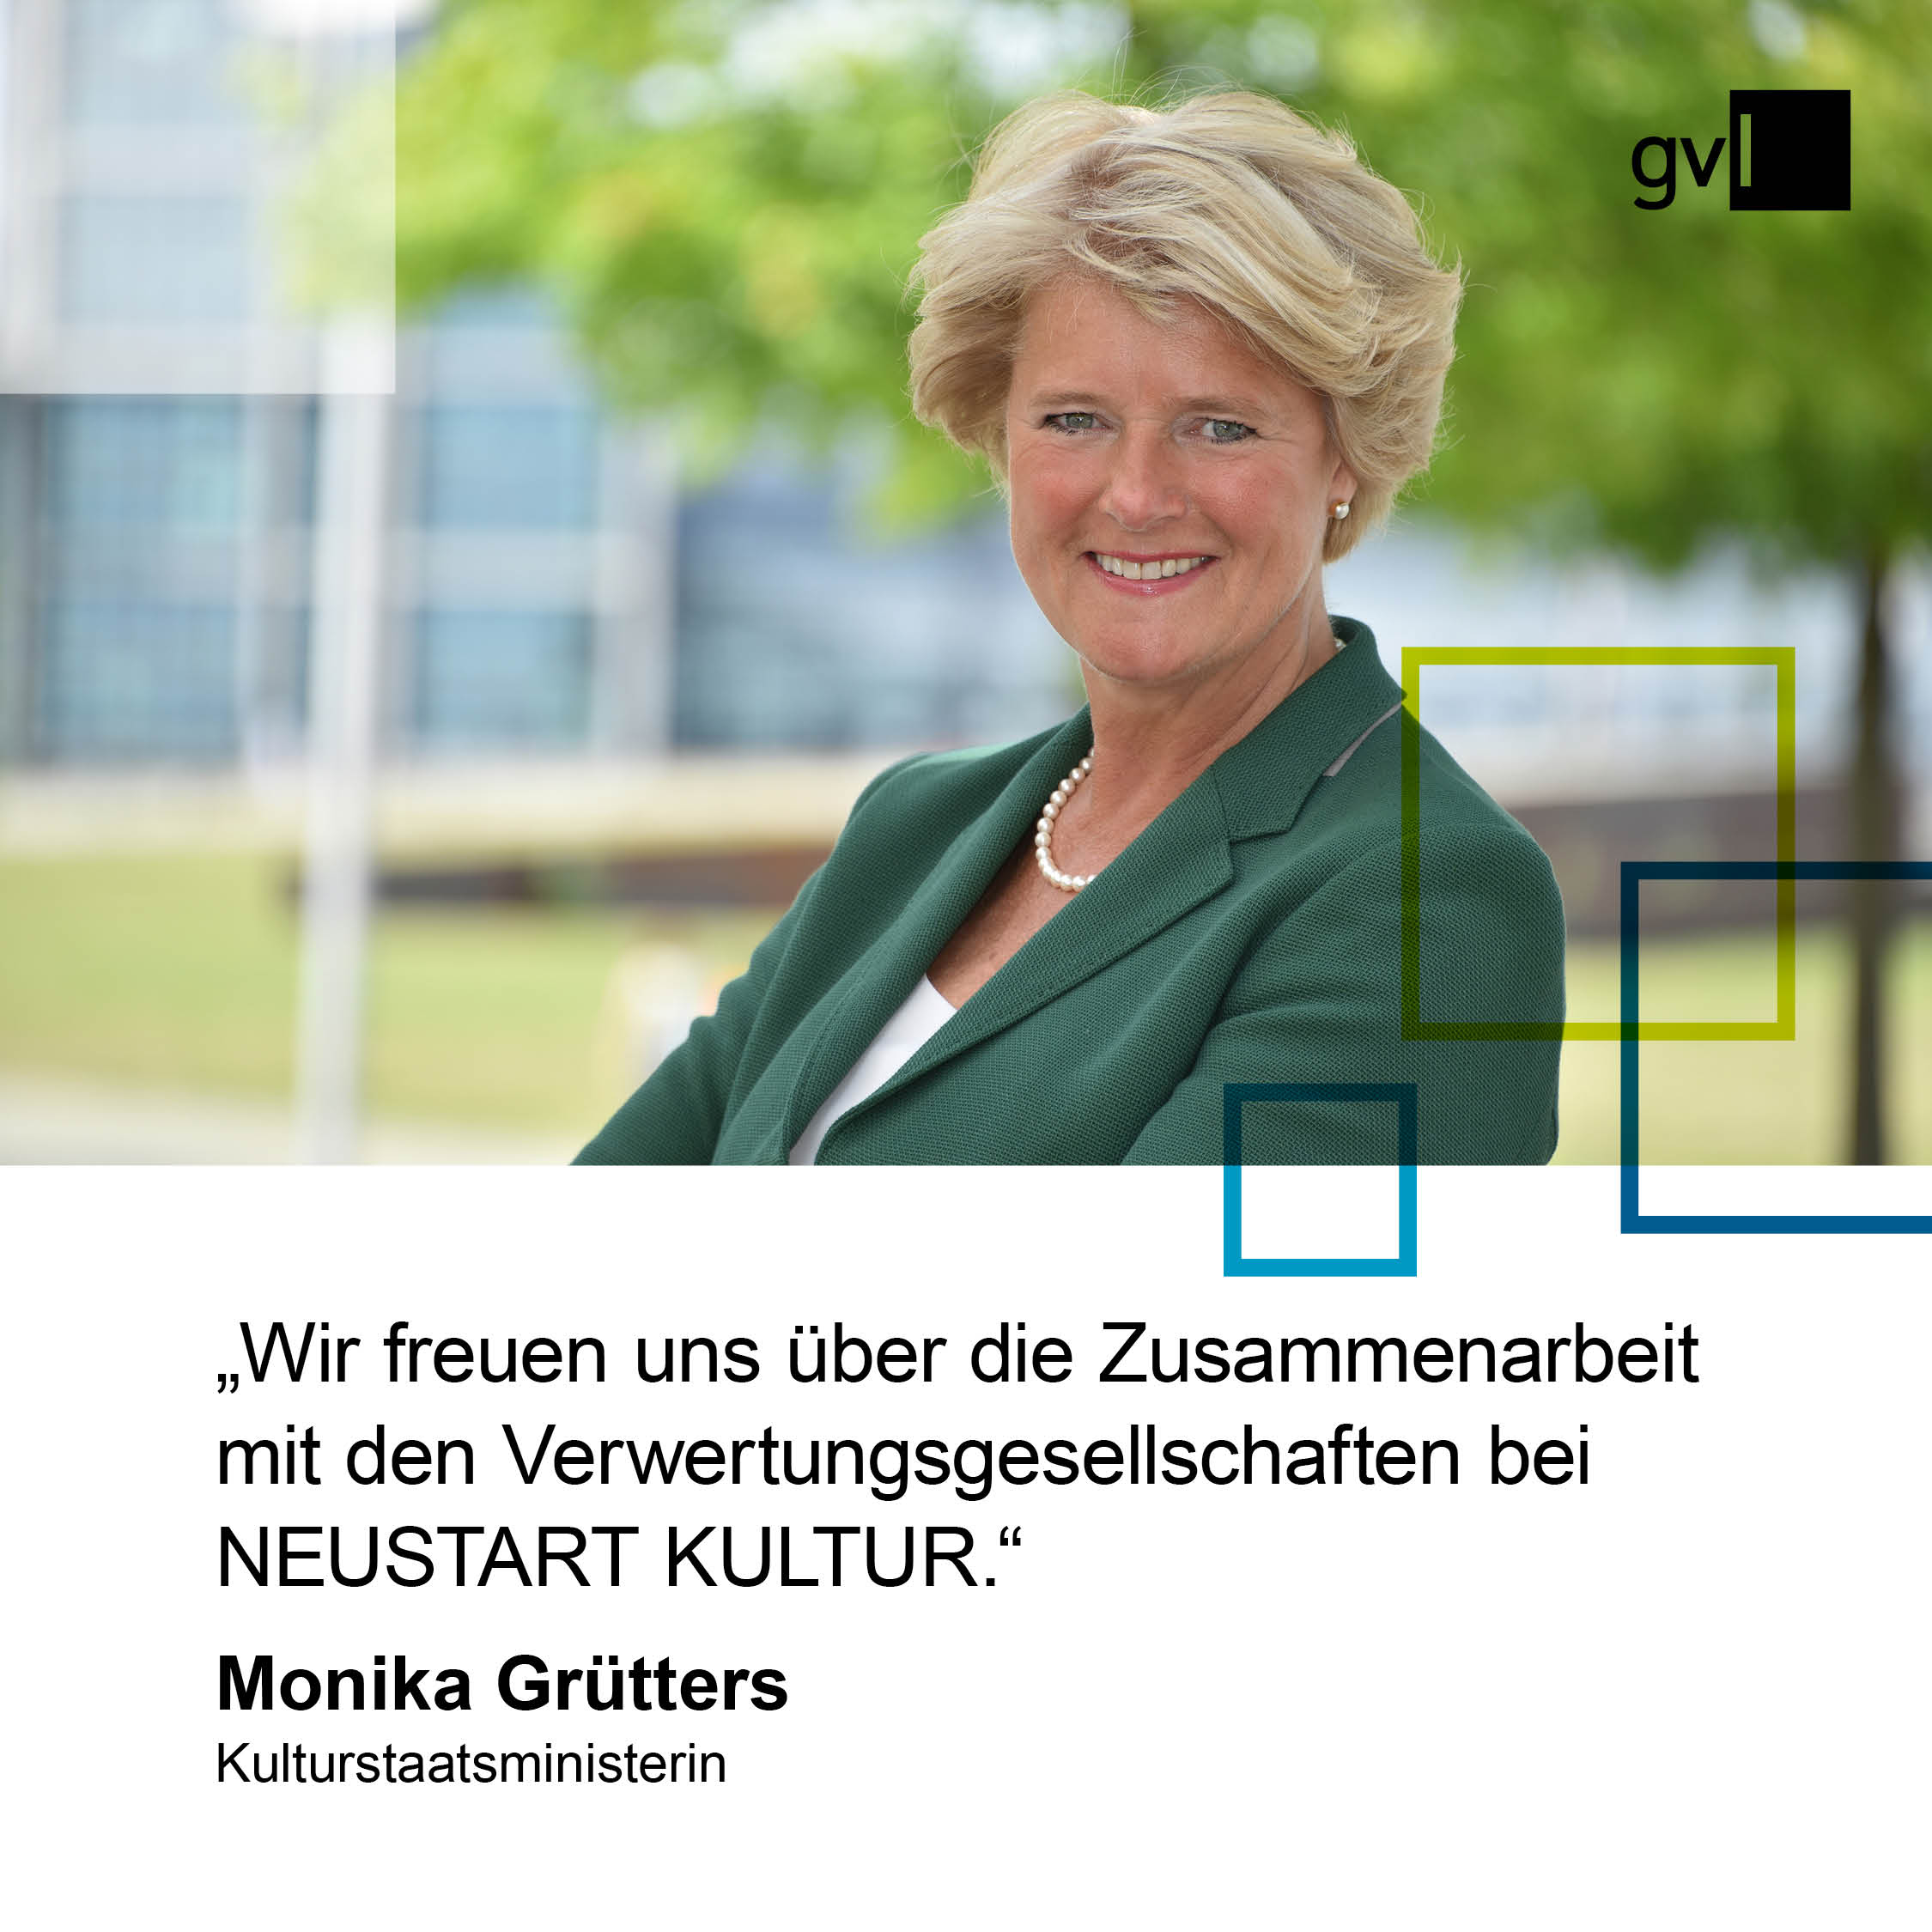 Zitattafel mit Kulturstaatsministerin Monika Grütters